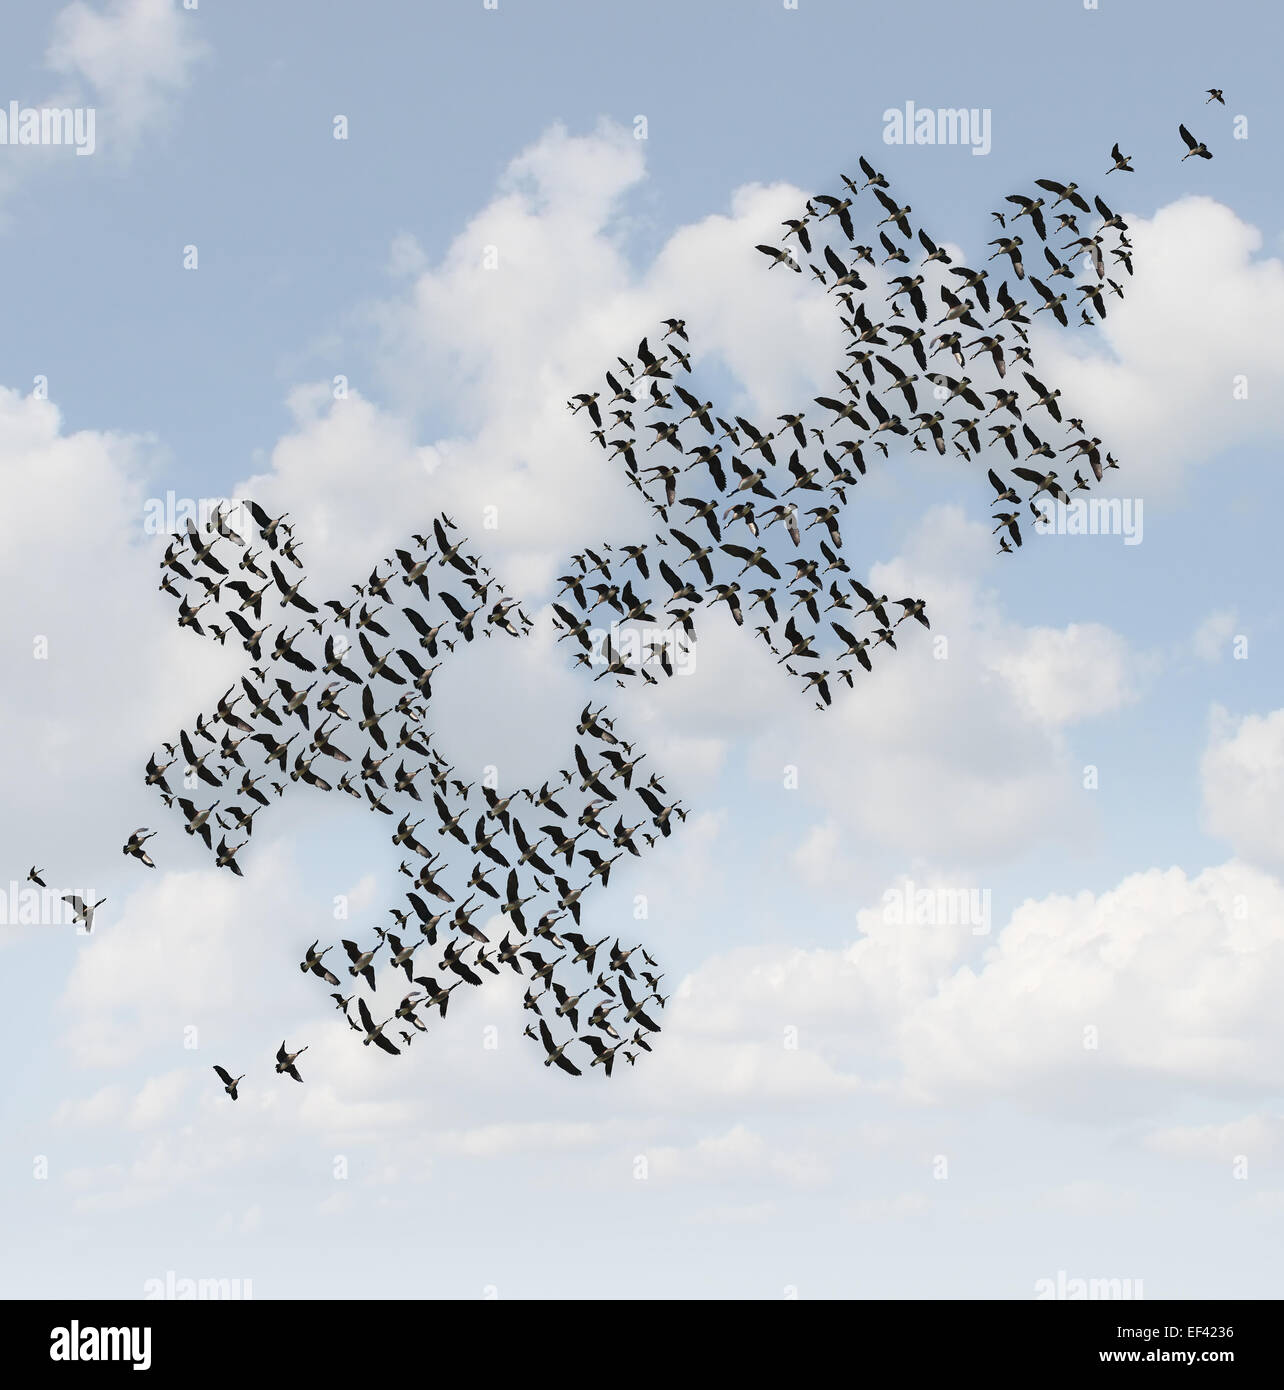 Fliegende Vögel puzzle als ein Geschäftskonzept für Konzernstrategie als zwei Schwärme von Gänsen als Puzzlestücke zusammen kommen als Teamarbeit Erfolg Metapher geprägt. Stockfoto